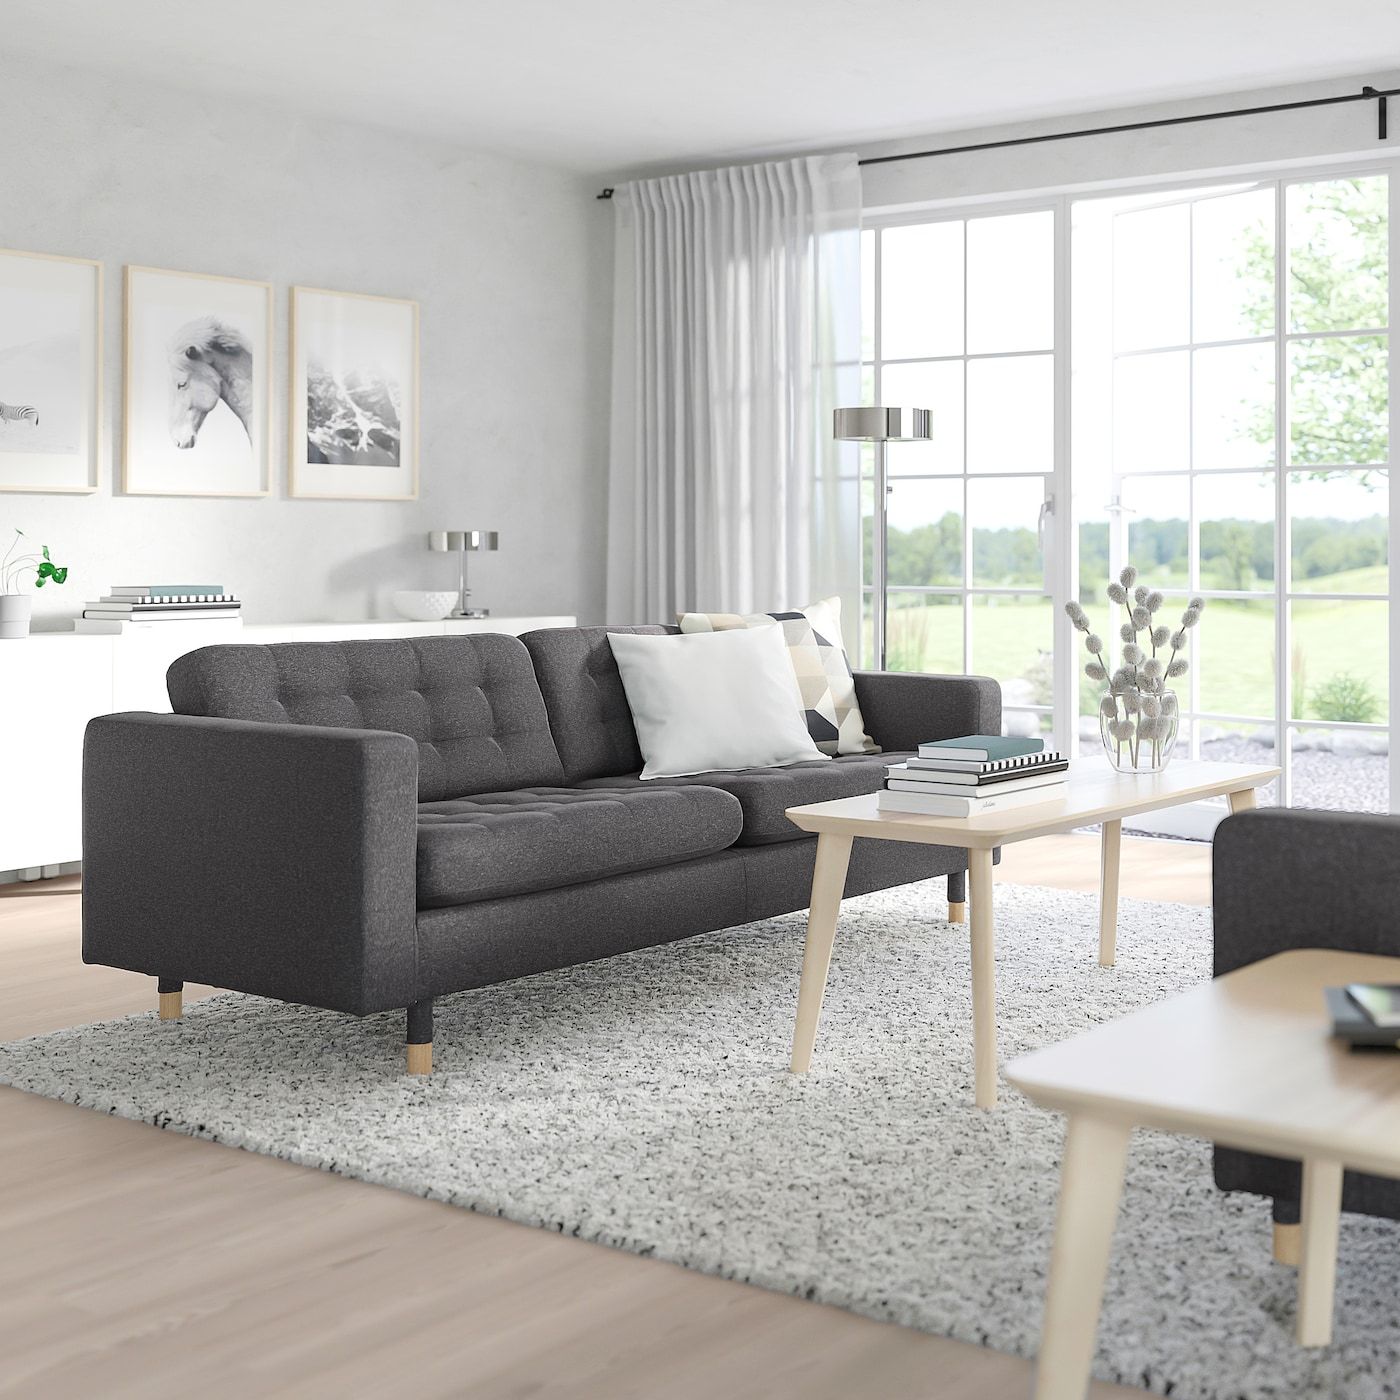 Morabo Sofa, Gunnared Dark Gray – Ikea Inside Sofas In Dark Grey (View 11 of 15)